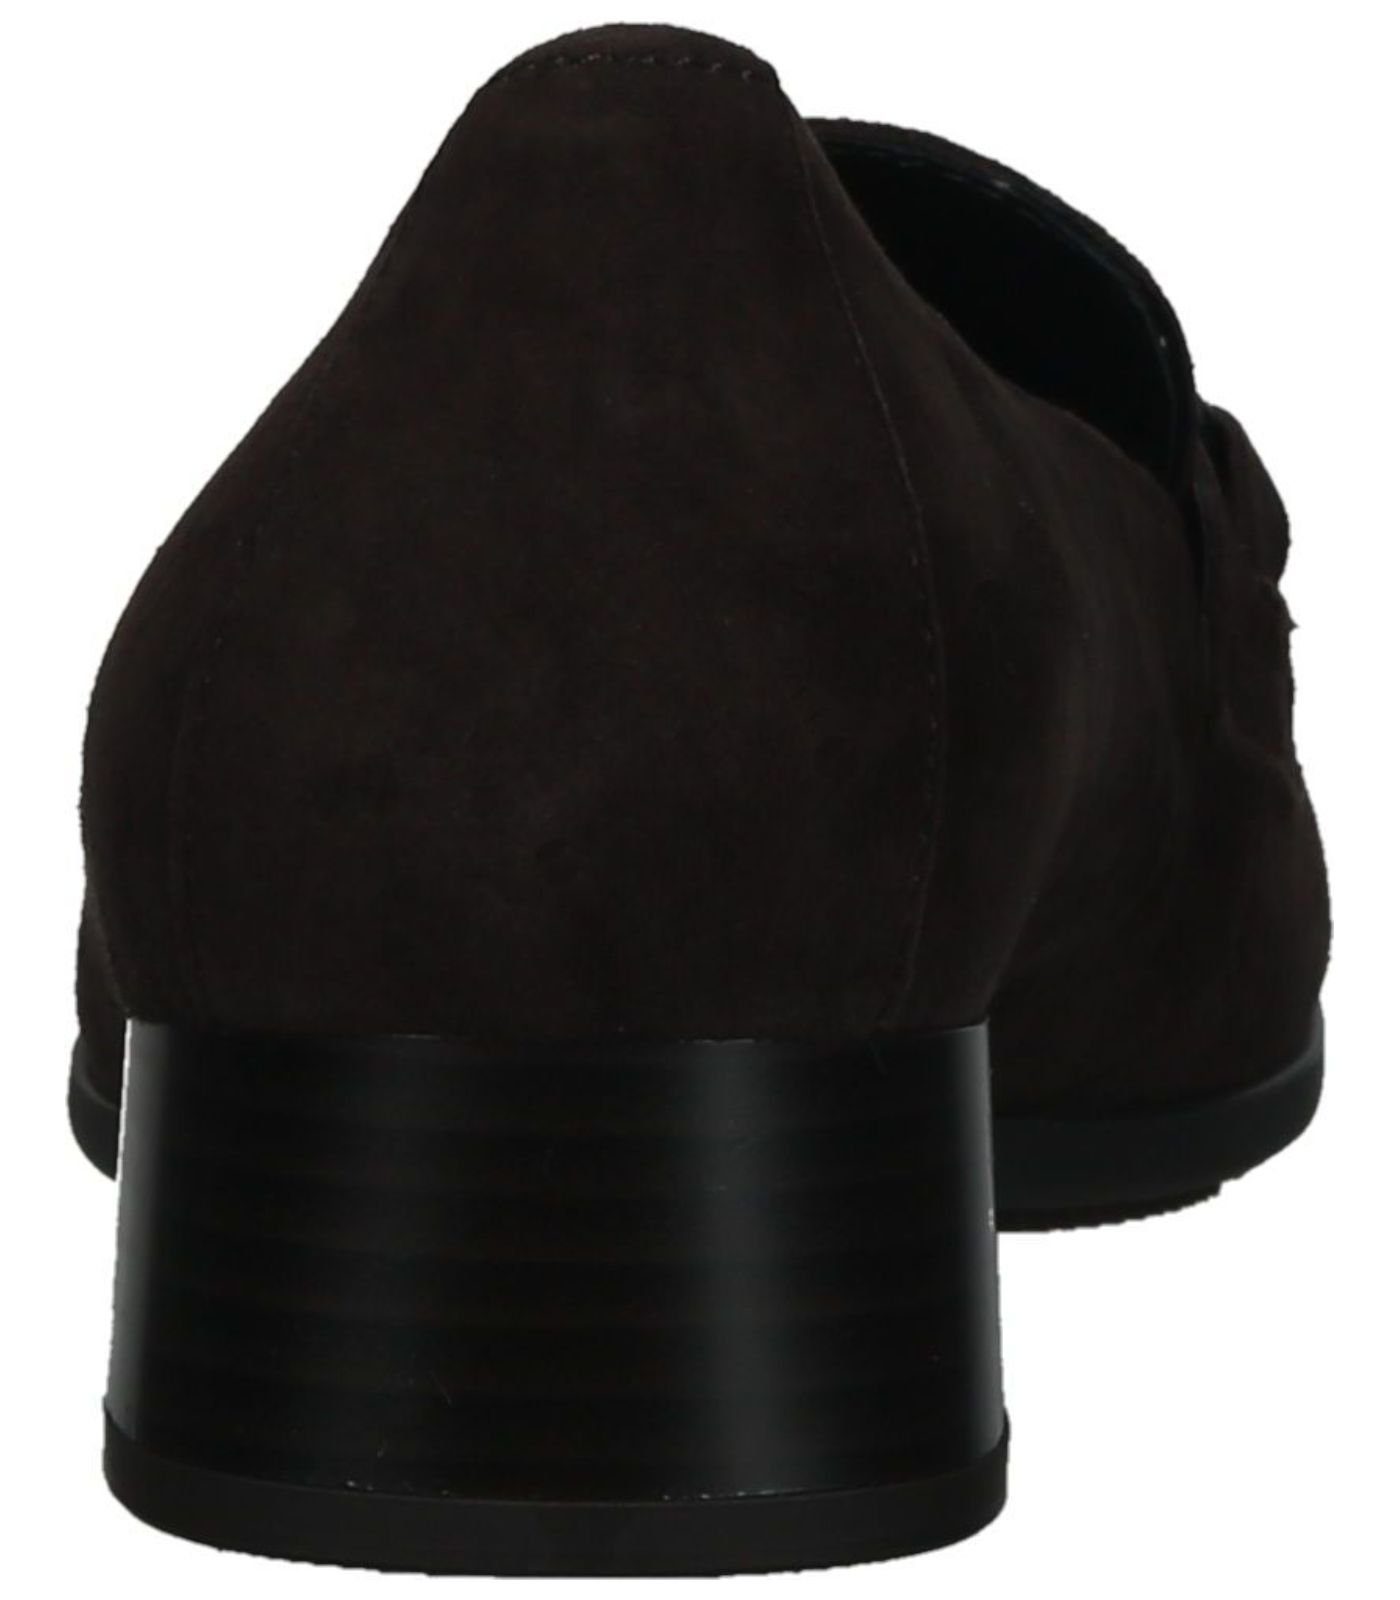 Slipper 18) Gabor Braun / Slipper (chocolate Leder/Textil